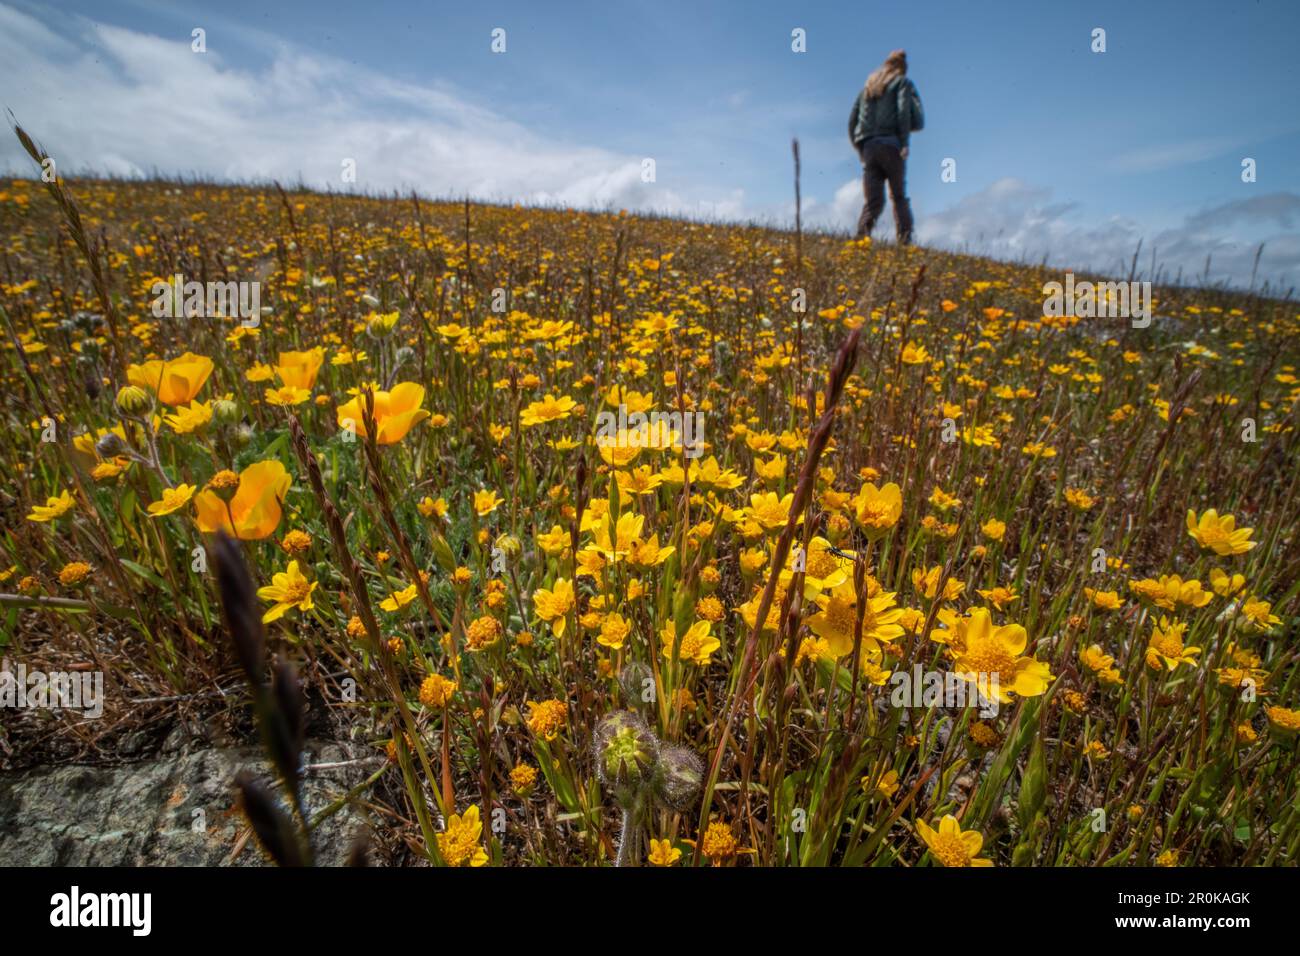 Un randonneur passe devant les champs aurifères de Californie (Lasthenia californica) et les coquelicots (Eschscholzia) pendant la super floraison printanière en Californie. Banque D'Images